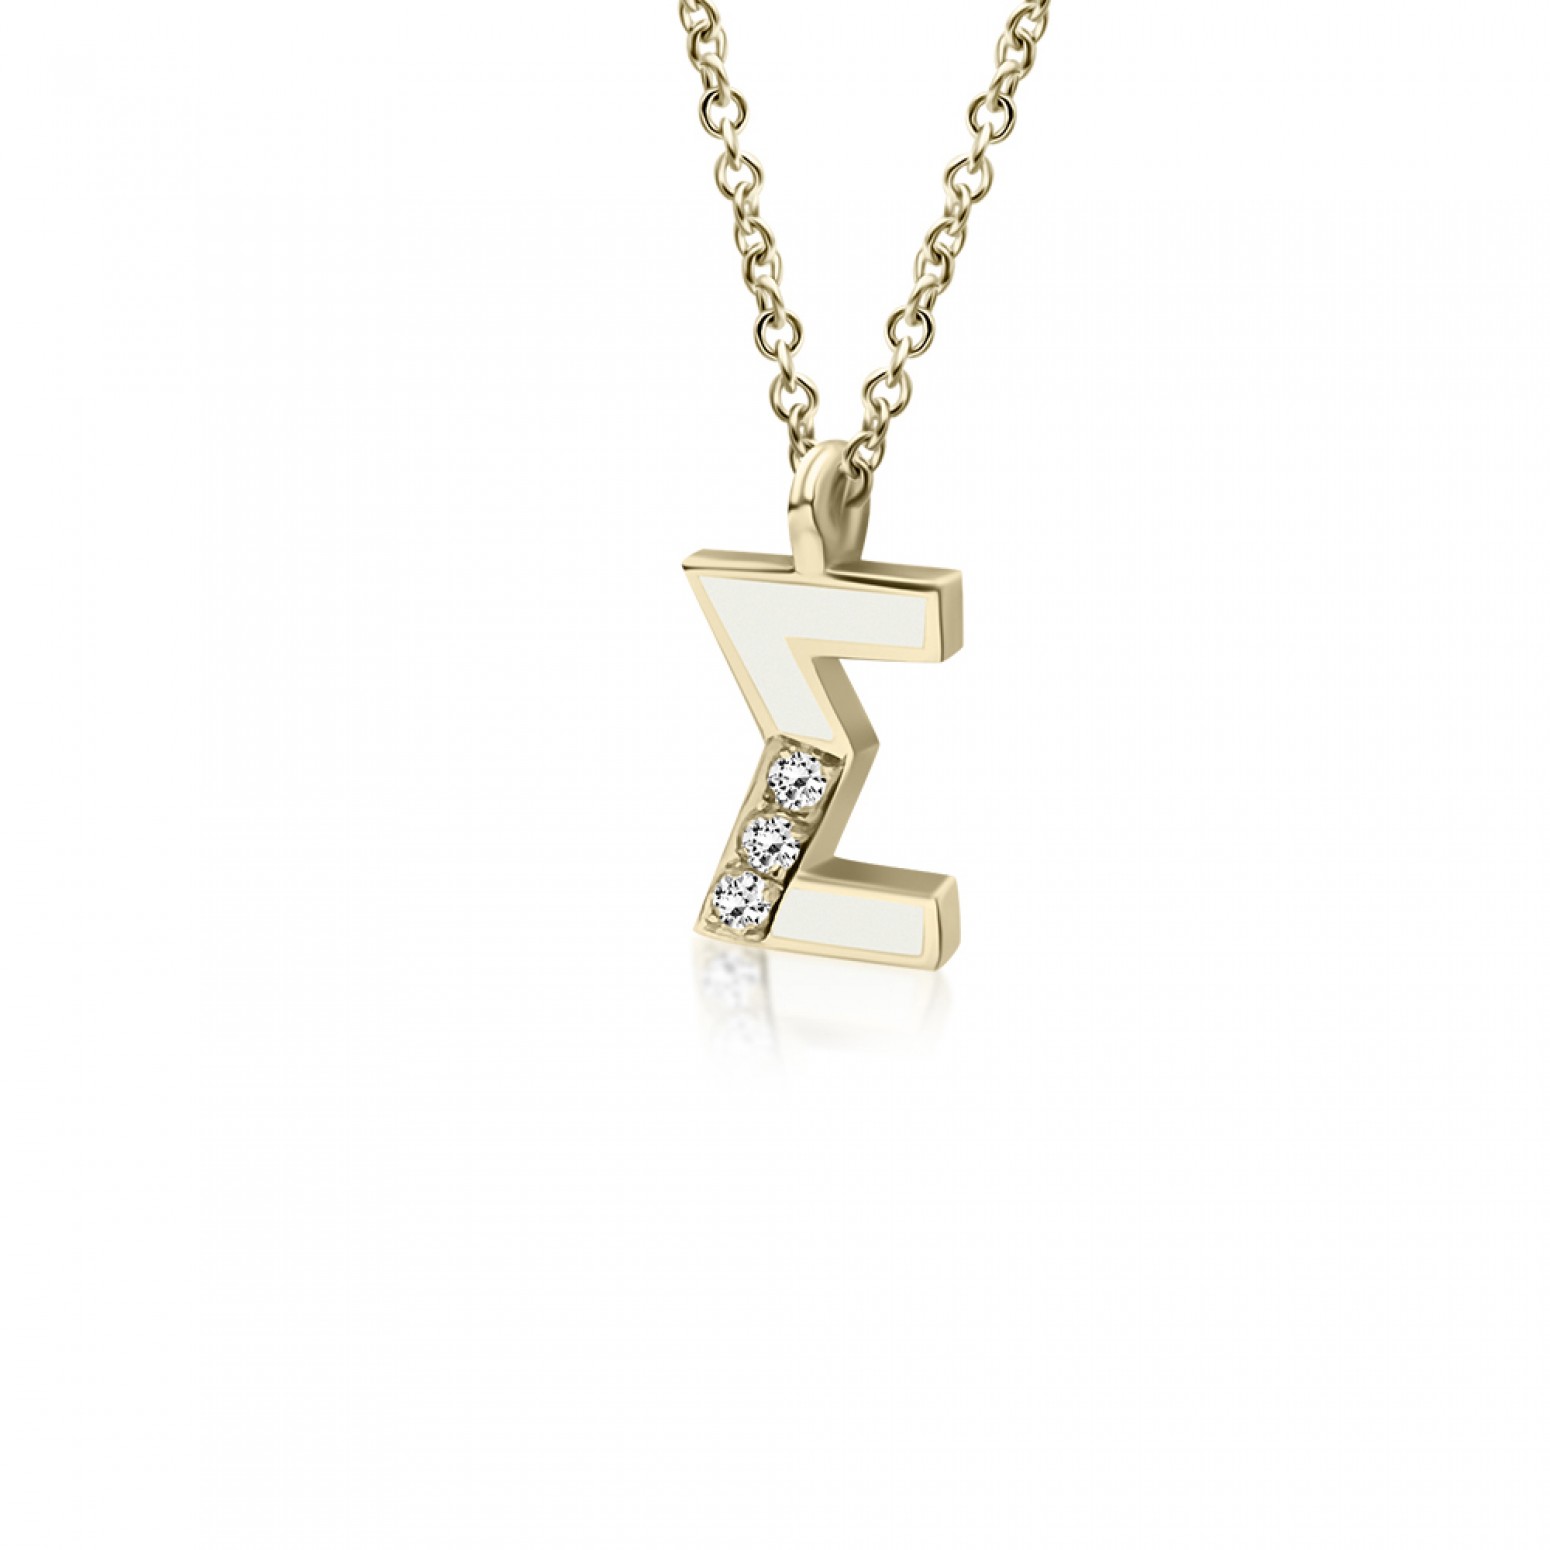 Monogram necklace Σ, Κ18 gold with diamonds 0.03ct, VS1, H and enamel, ko5453 NECKLACES Κοσμηματα - chrilia.gr